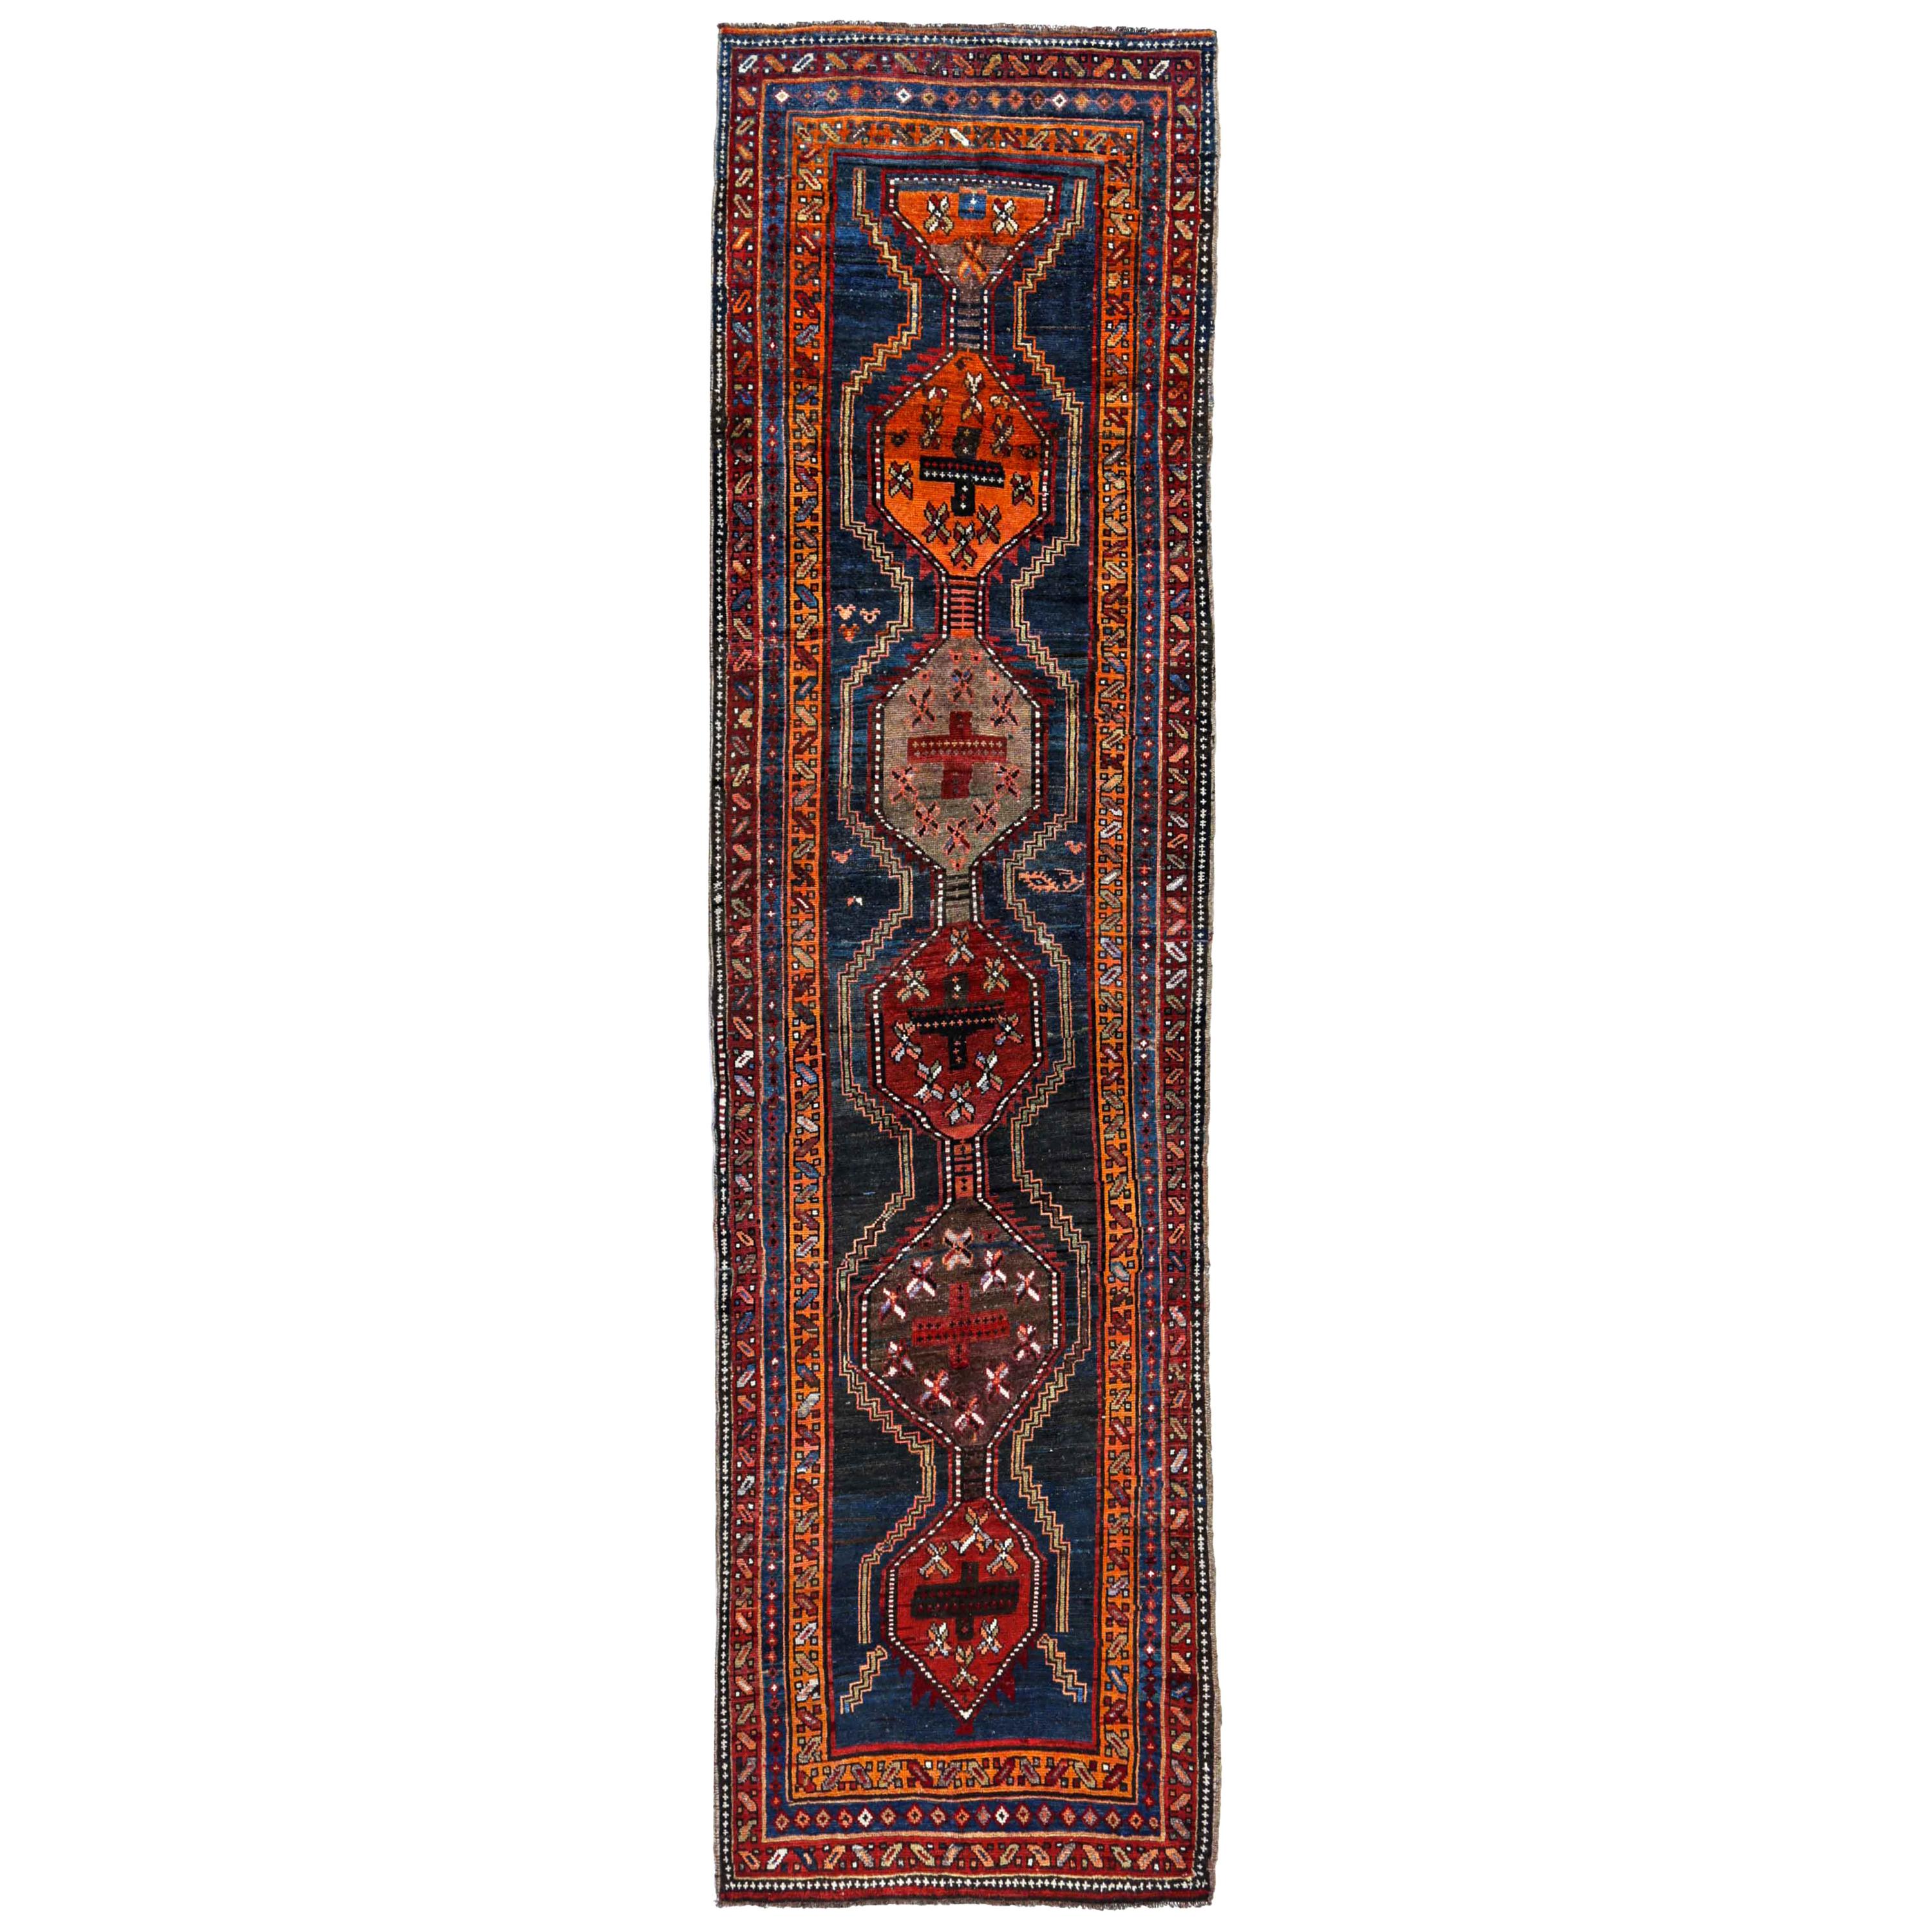 Antique Persian Runner Rug Kurdish Design